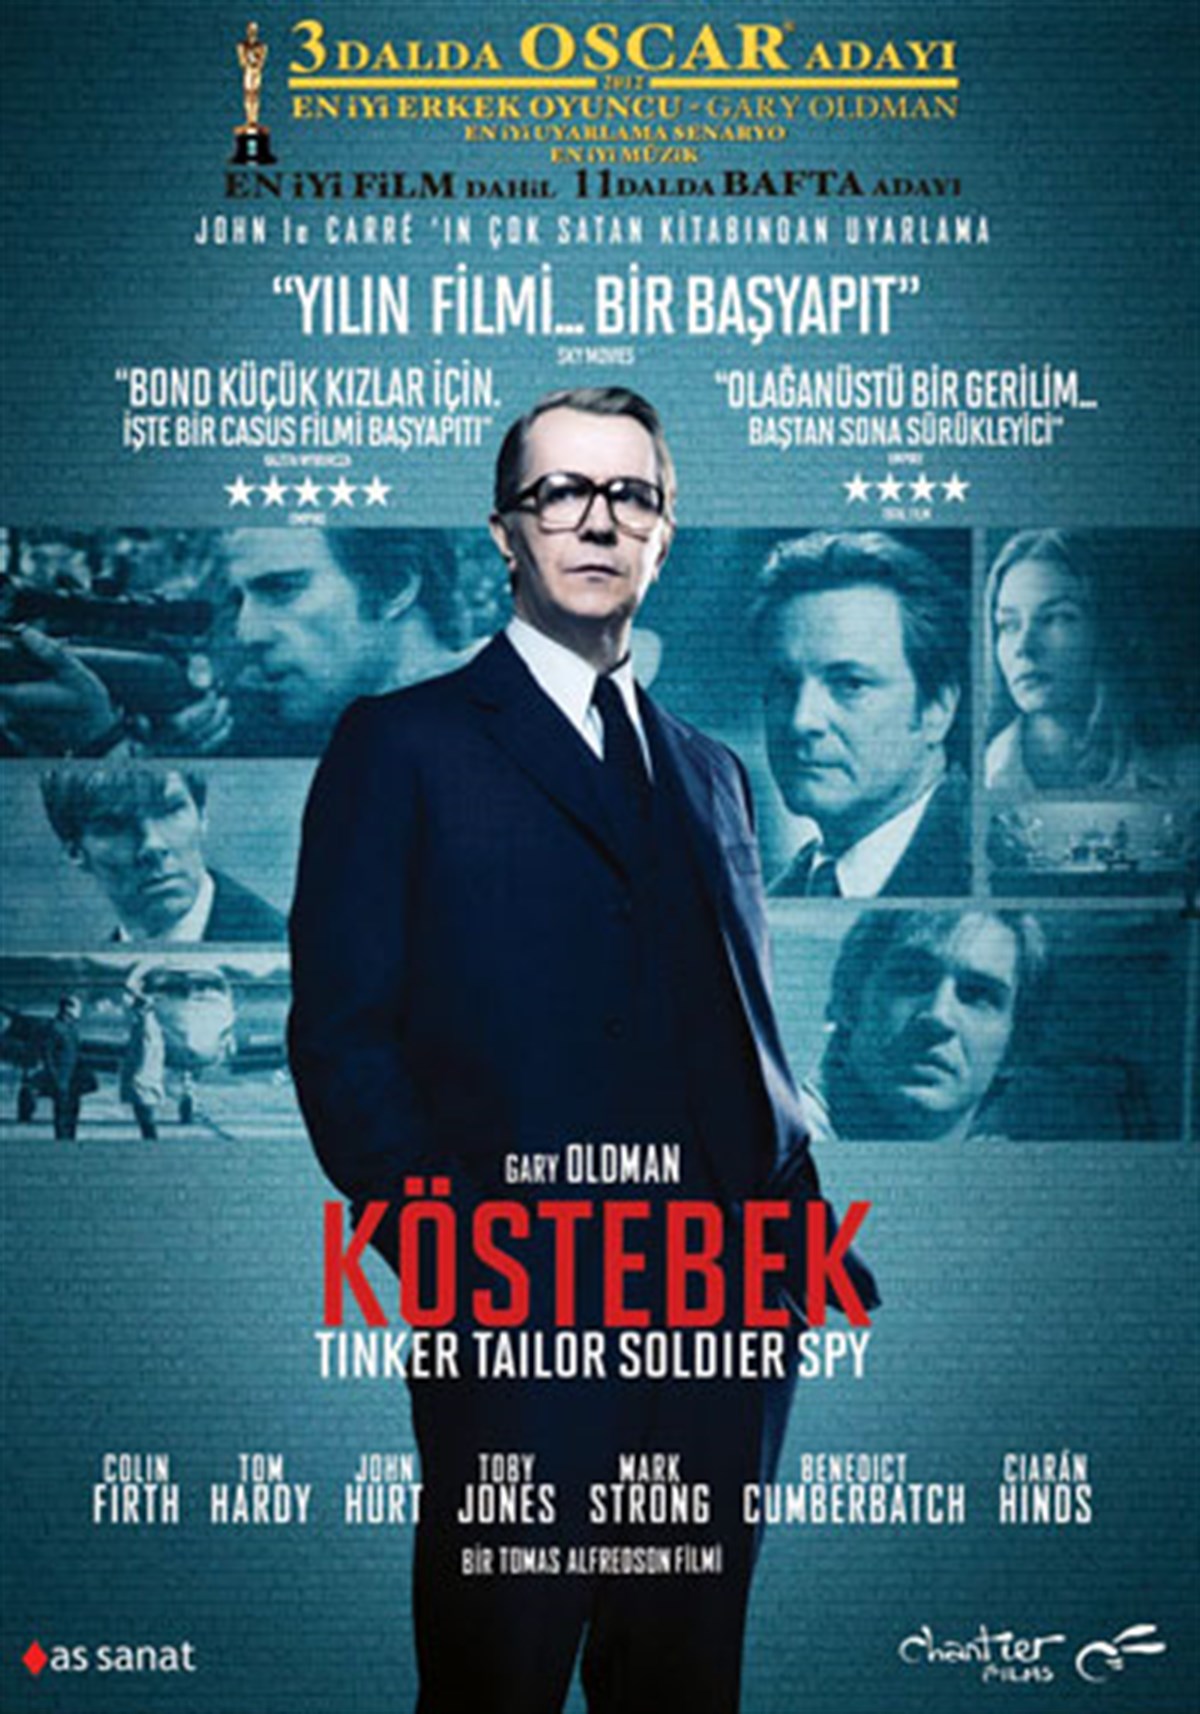 Kostebek---Tinker-Tailor-Soldier-Spy-b725.jpg